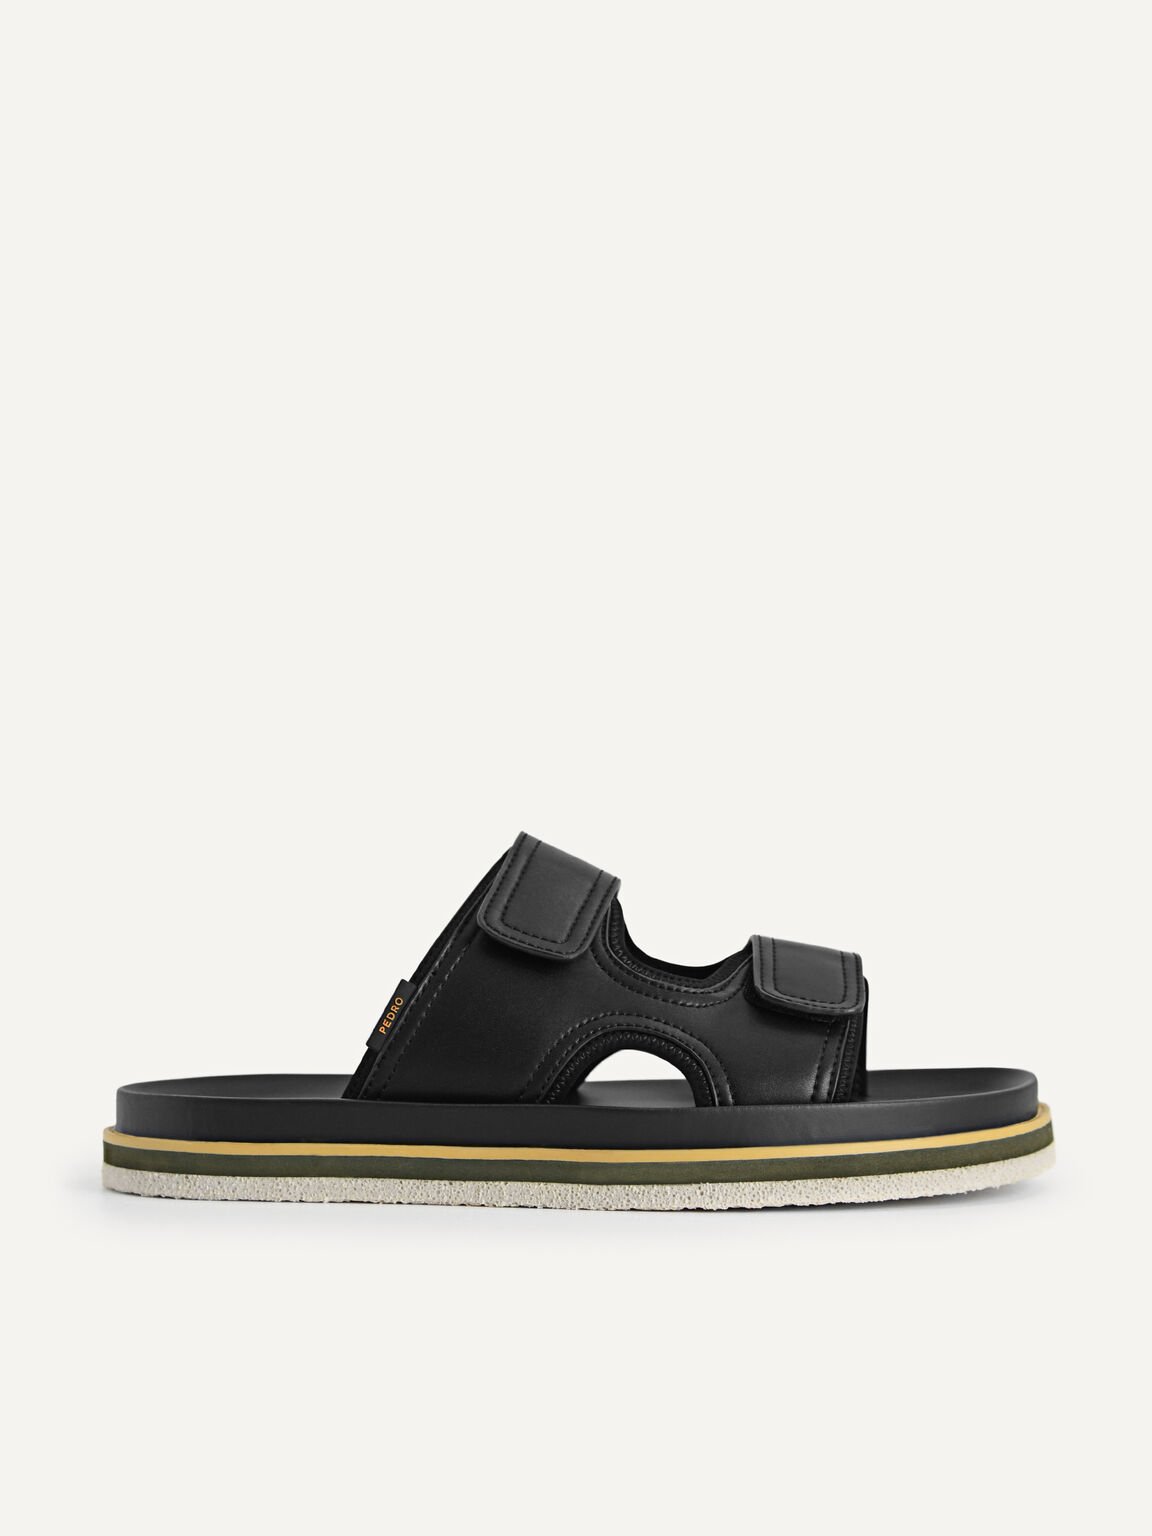 Double Strap Sandals, Black